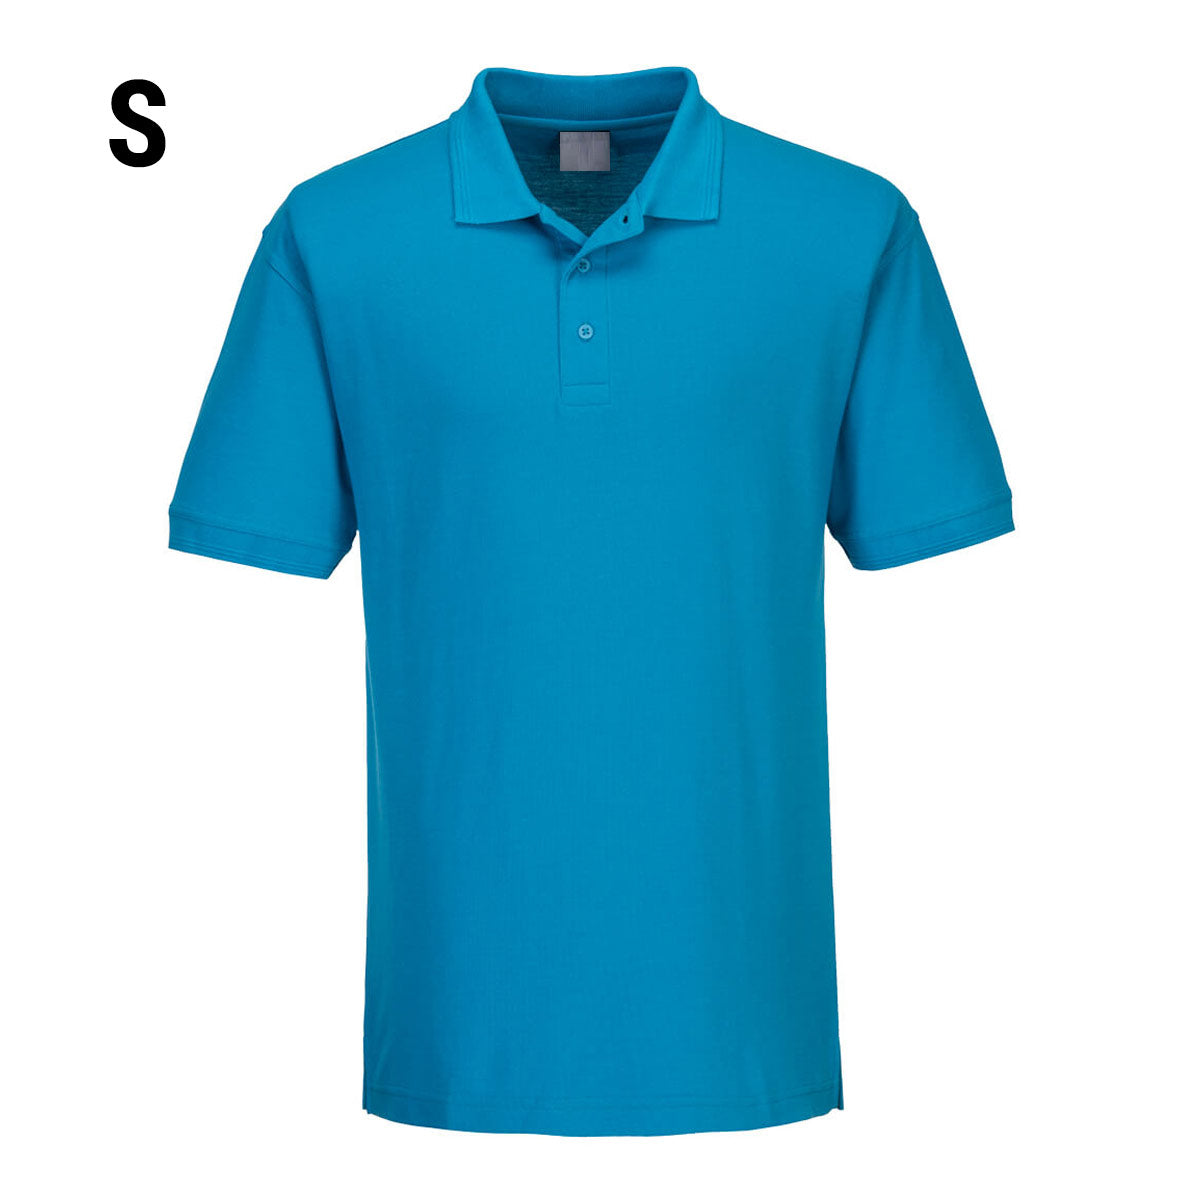 Poloskjorte for menn - Vannblå - størrelse: S